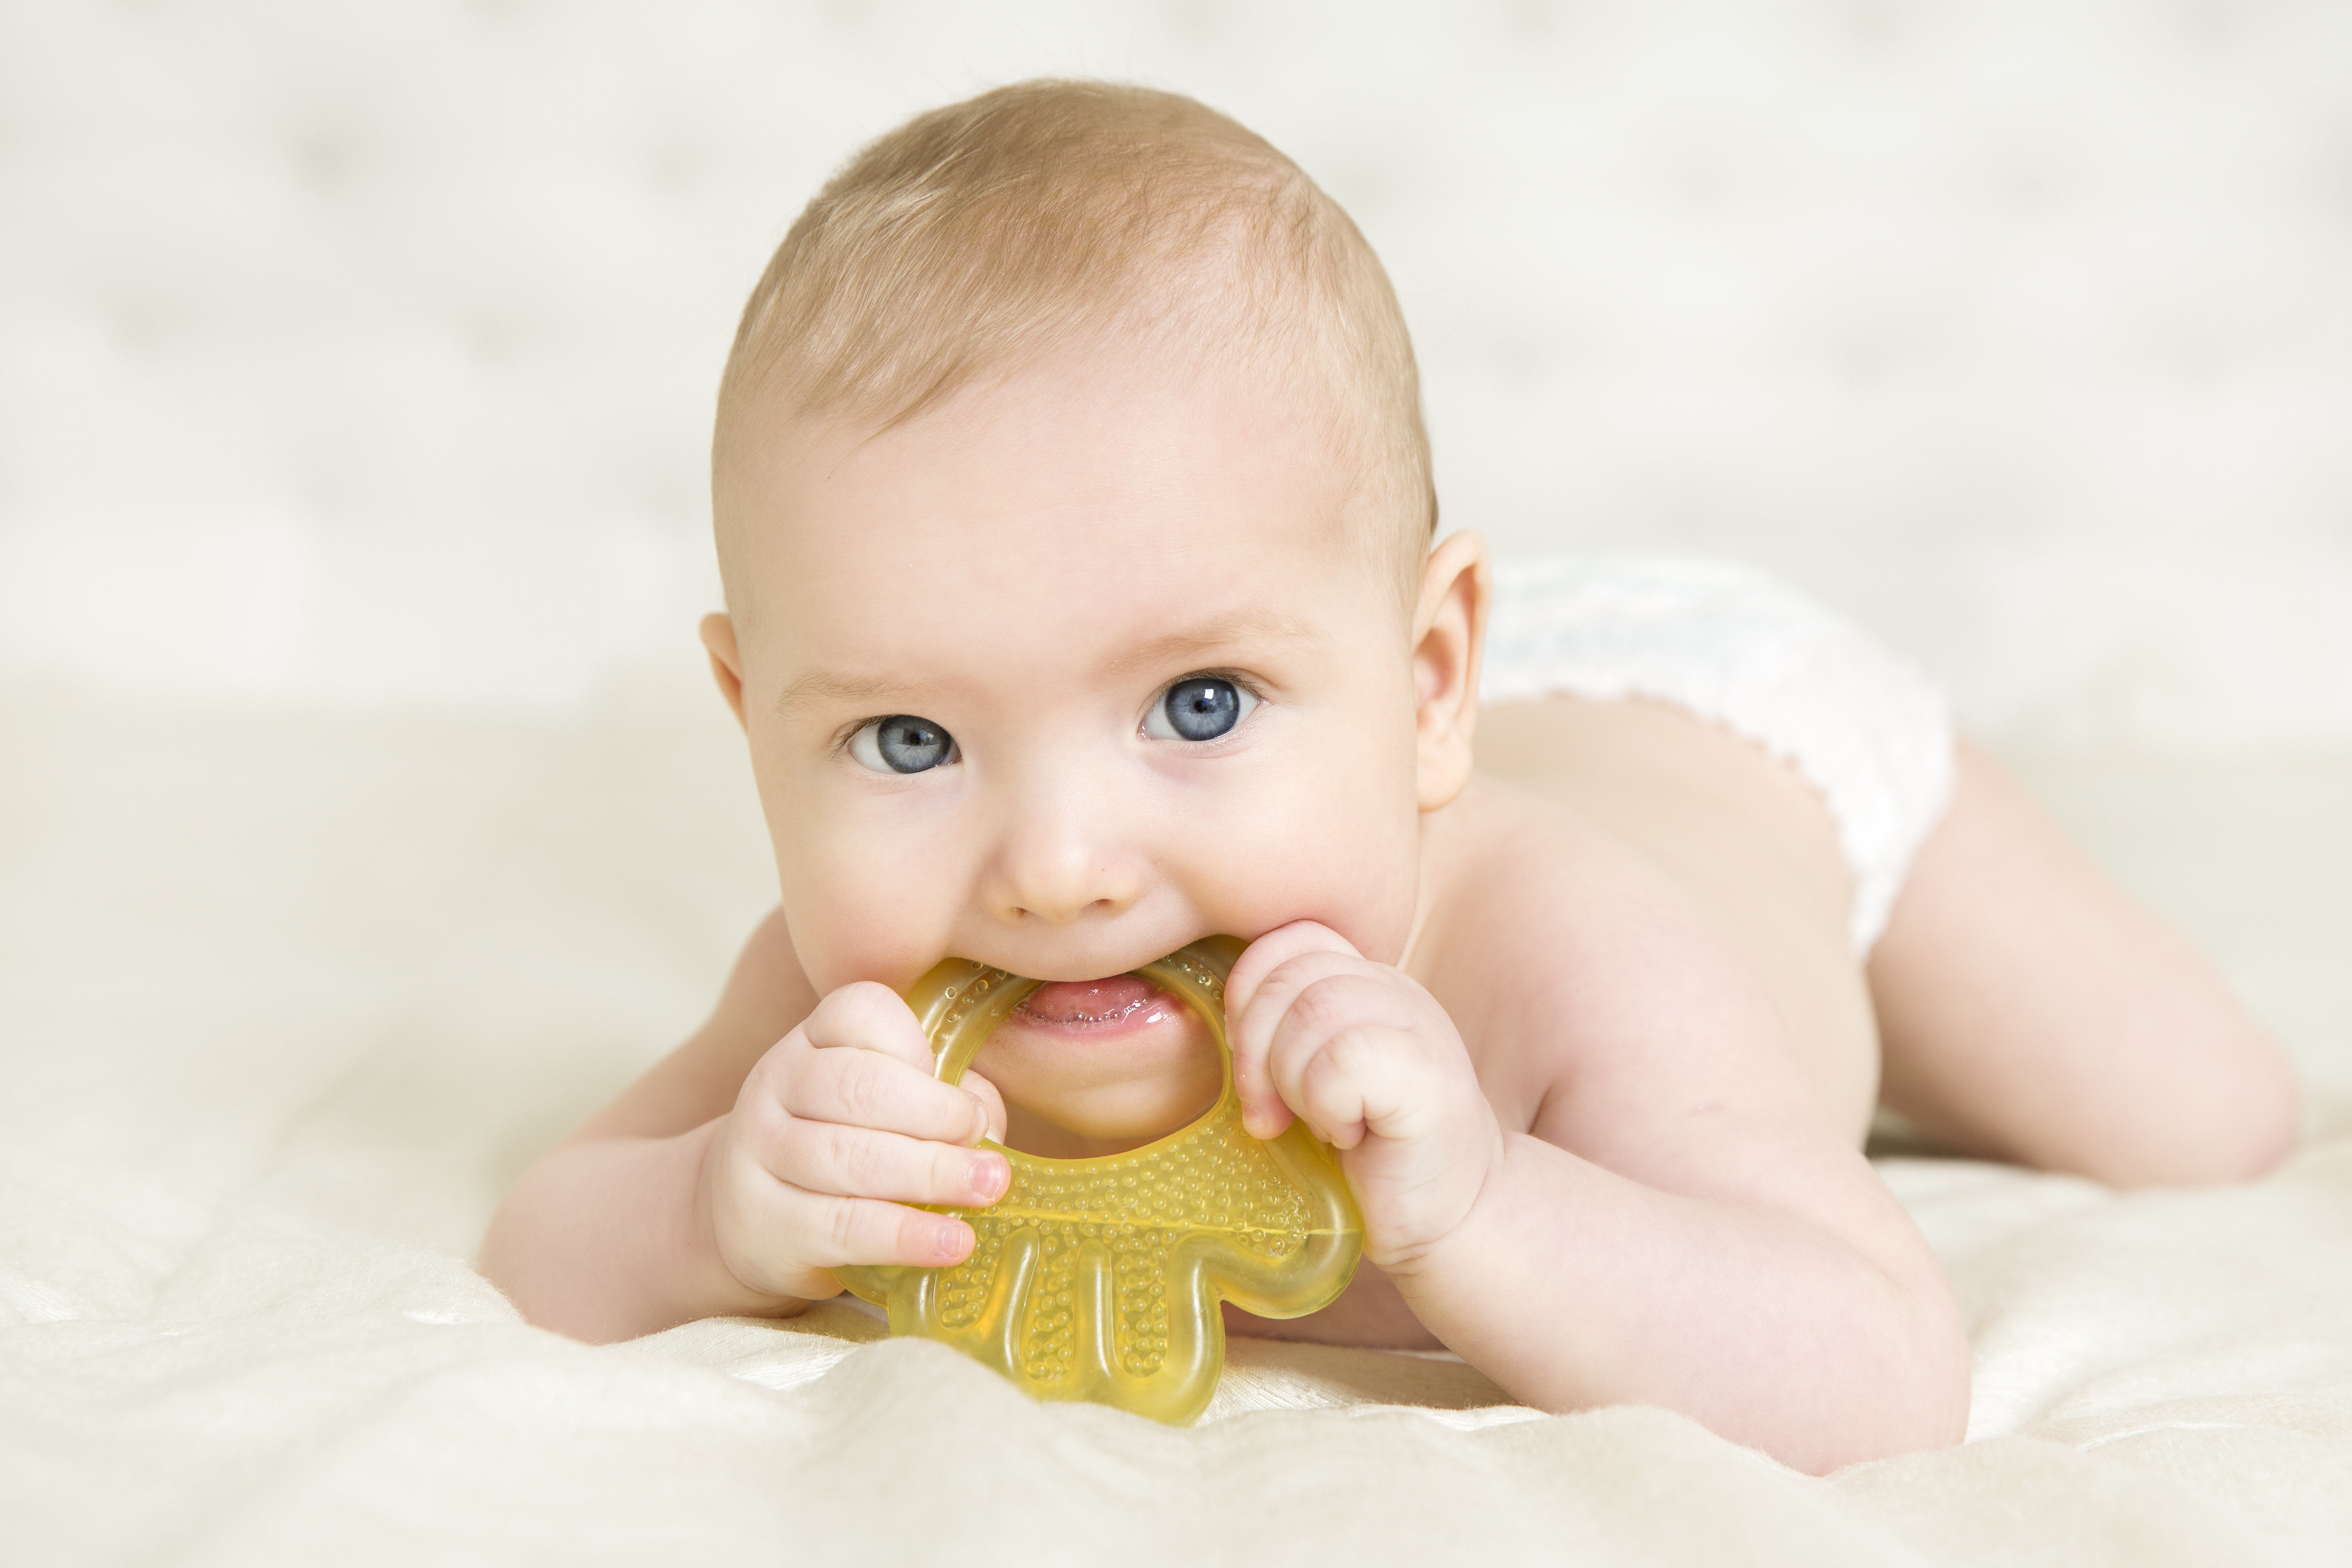 День 6 месяцев назад. 6 Месяцев малышу. Фото на 6 месяцев девочке. Младенец с игрушкой во рту. Младенец 6 месяцев.